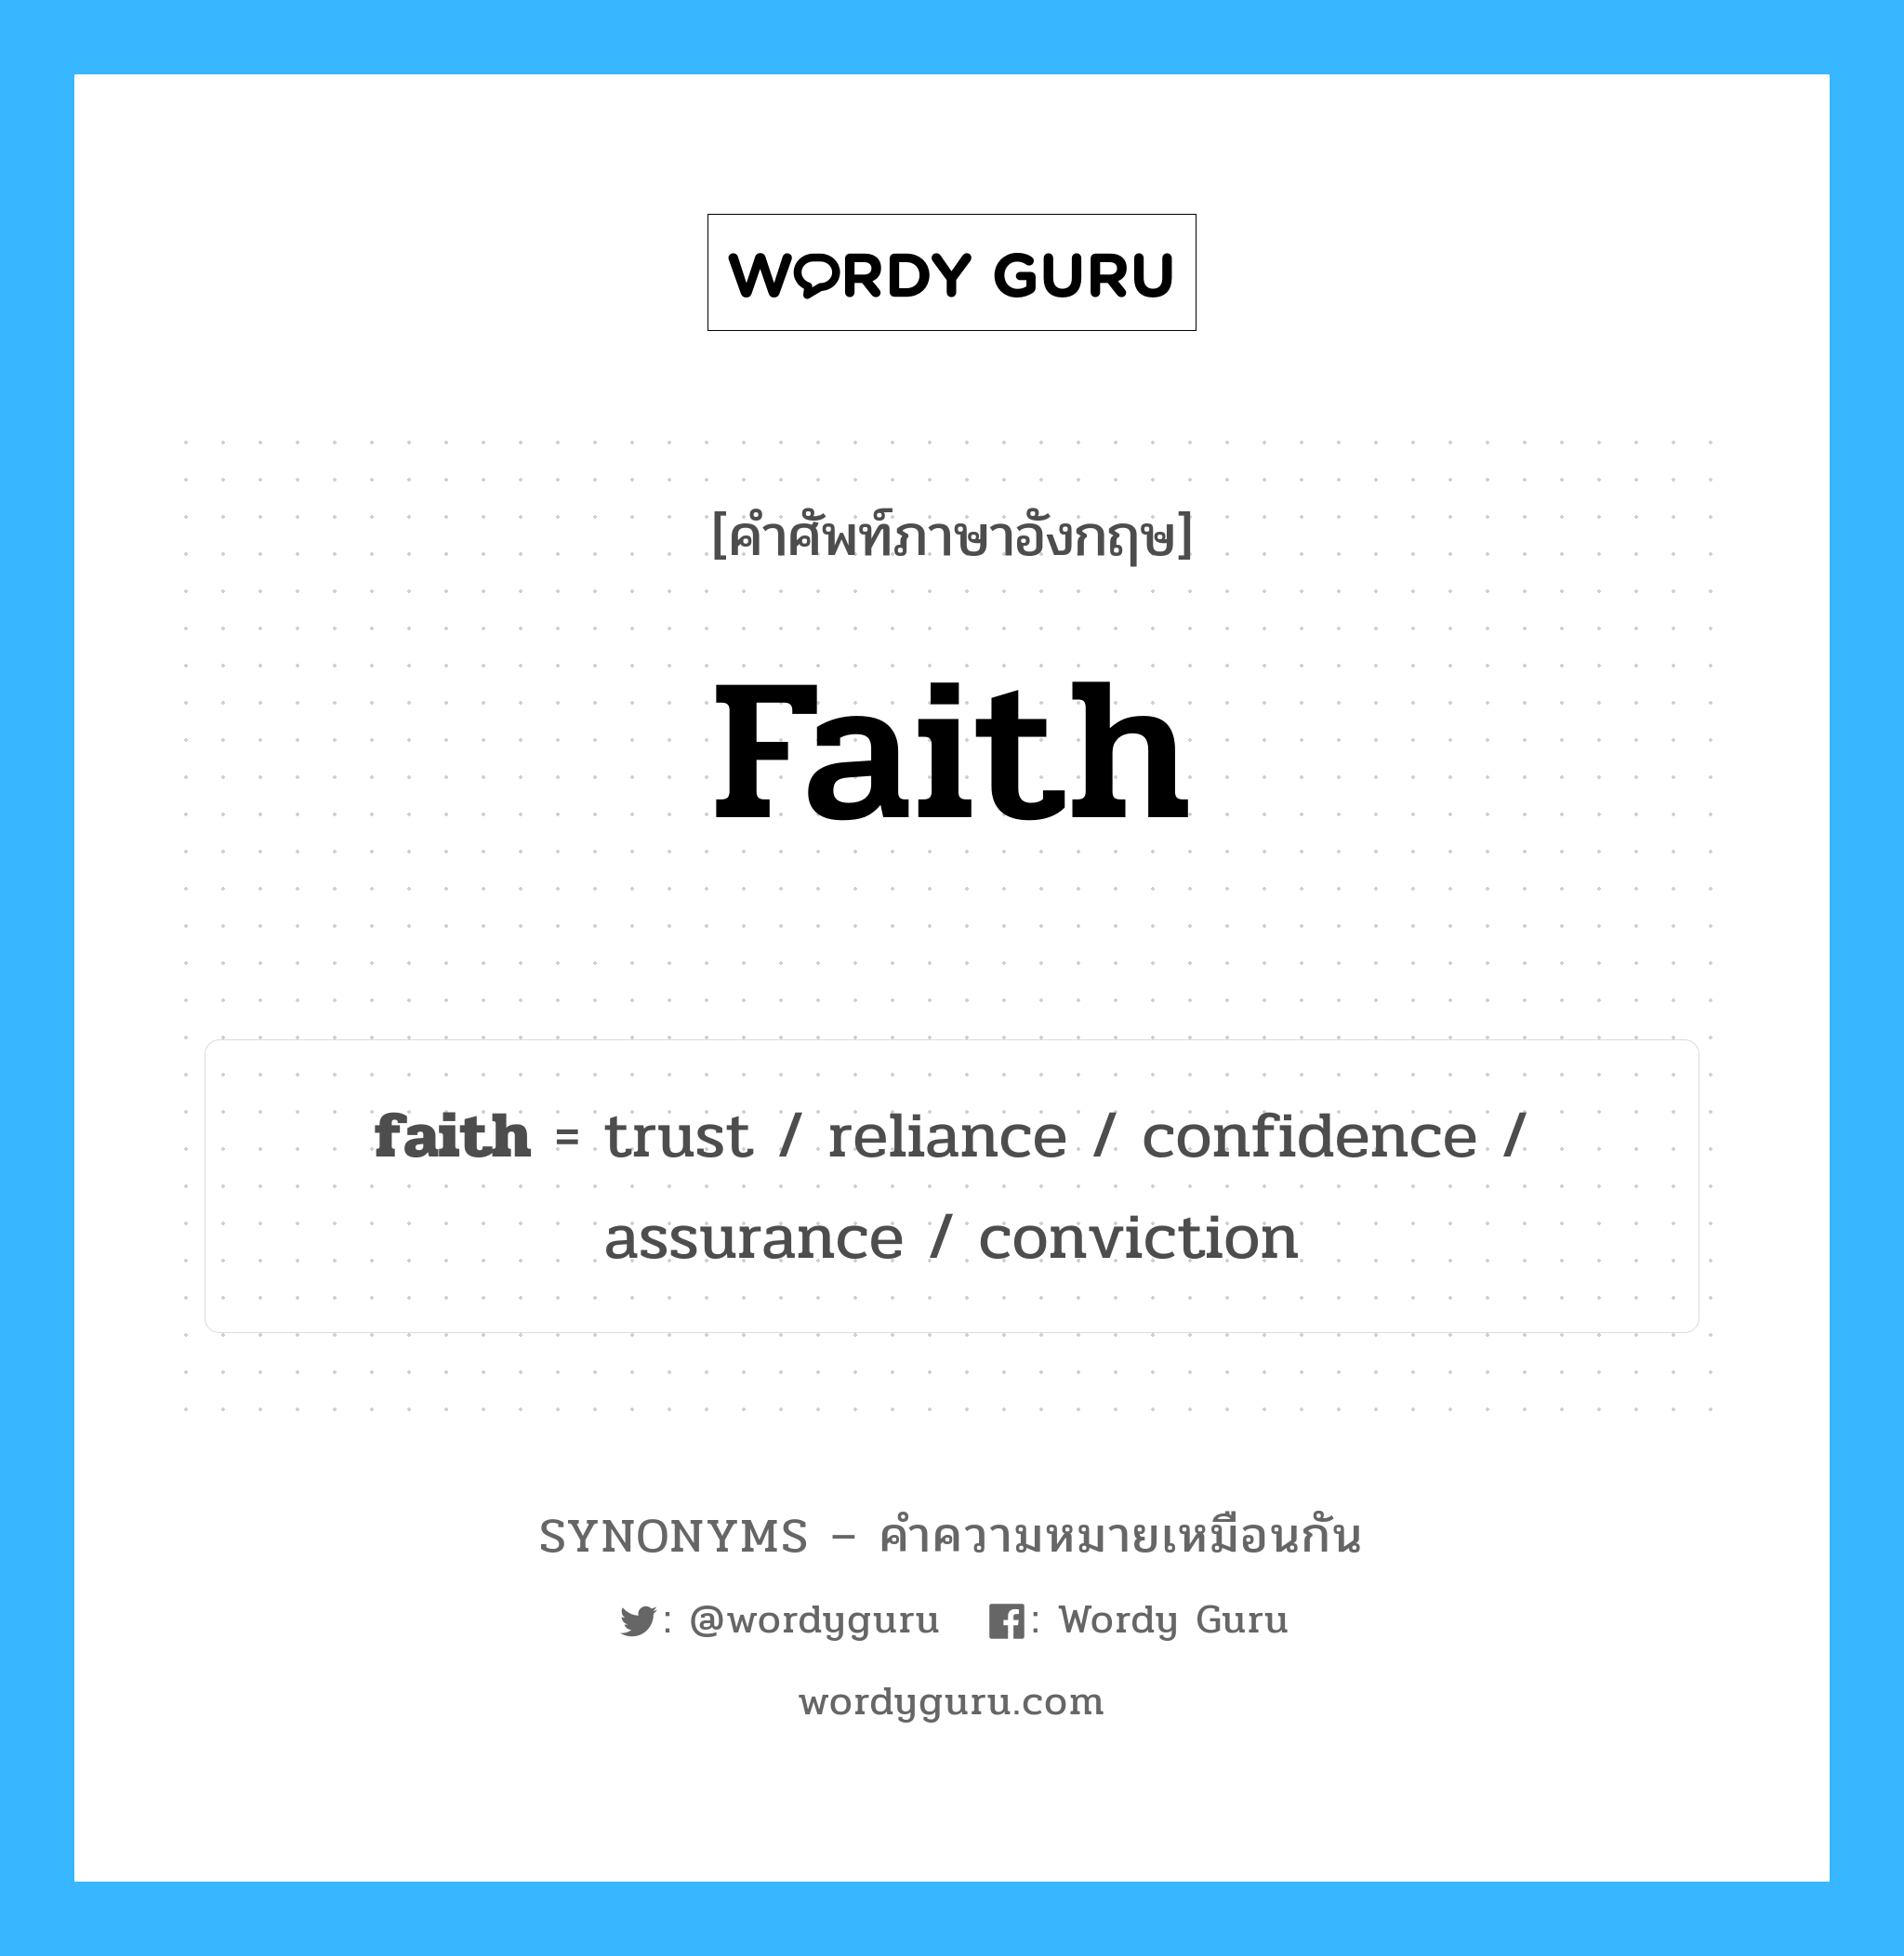 faith เป็นหนึ่งใน trust และมีคำอื่น ๆ อีกดังนี้, คำศัพท์ภาษาอังกฤษ faith ความหมายคล้ายกันกับ trust แปลว่า ความน่าเชื่อถือ หมวด trust